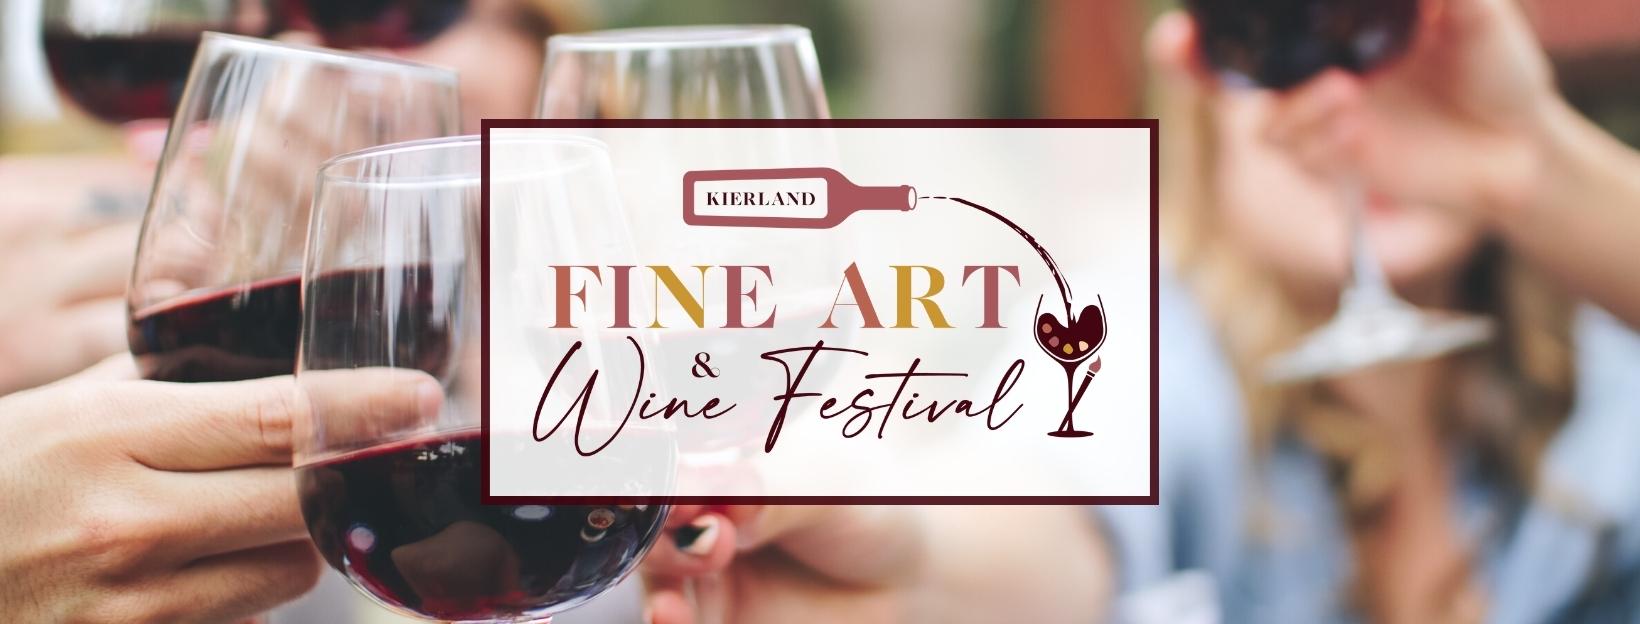 Kierland Fine Art & Wine Festival 